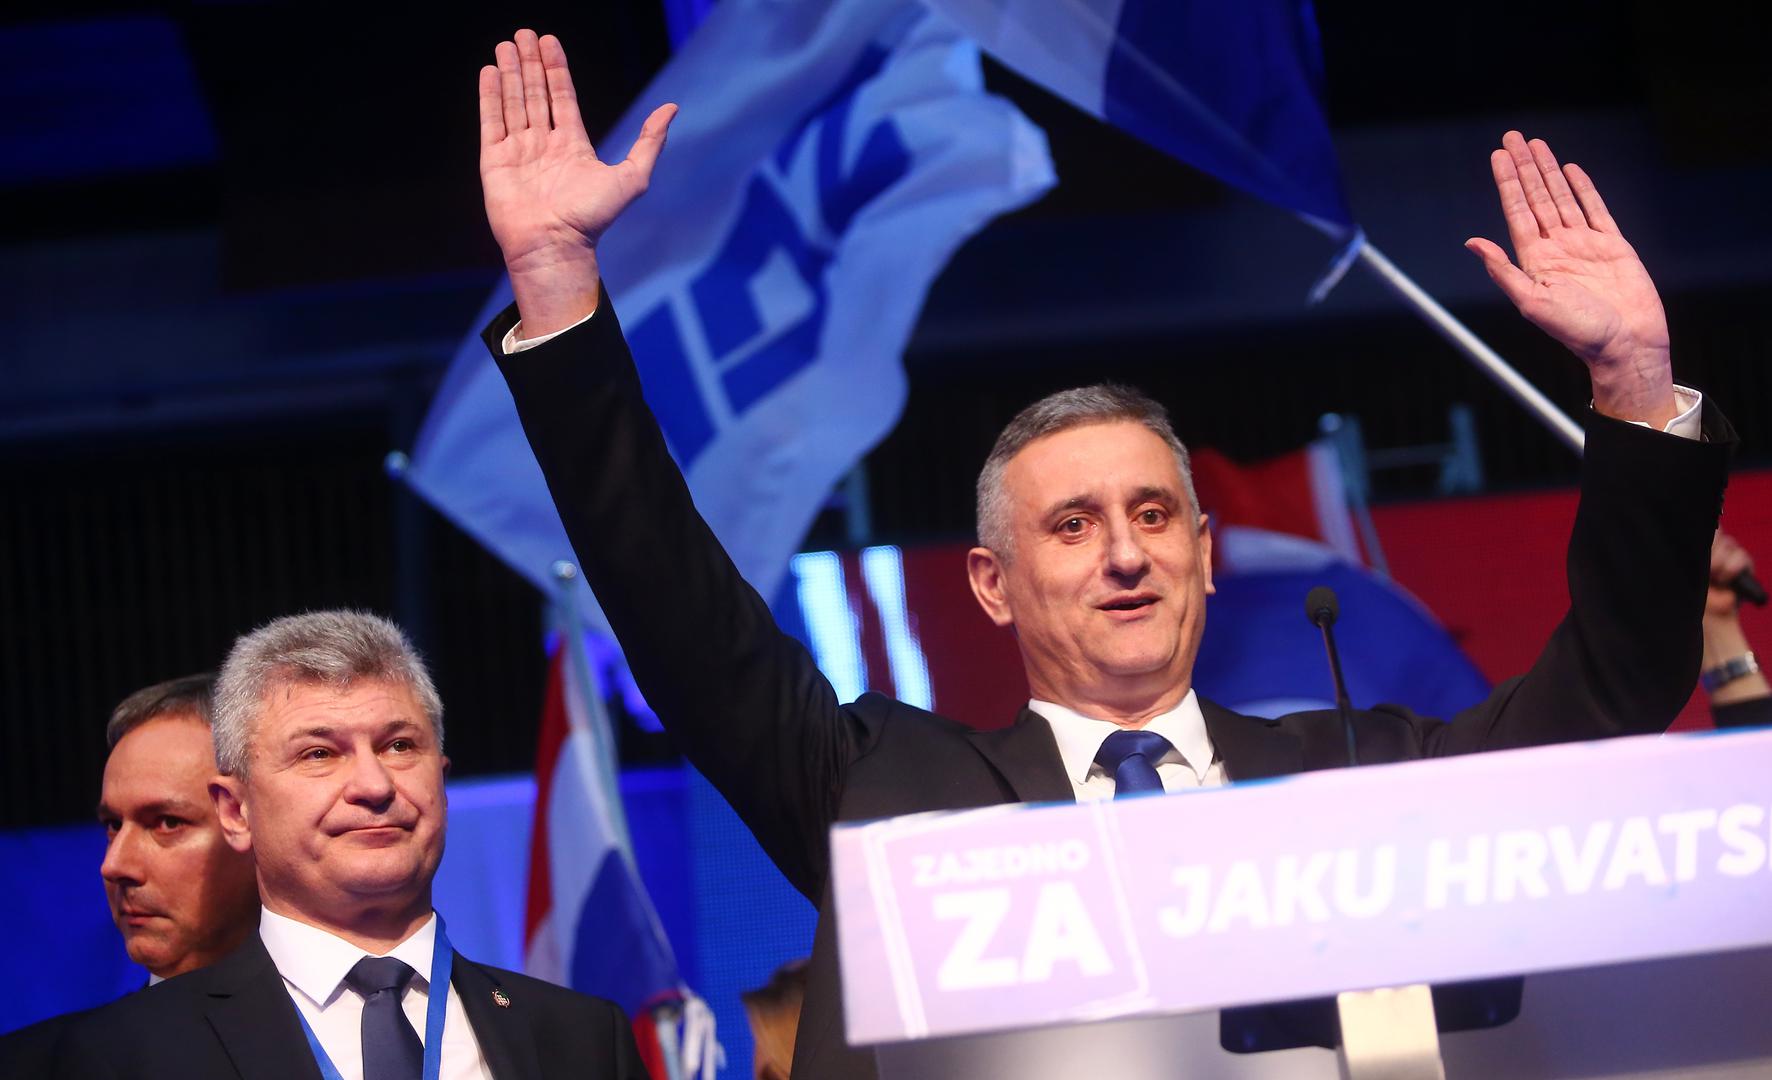 Tomislav Karamarko predvodio je HDZ na izbore za 8. saziv Sabora, a stranka 2015. godine osvaja 49 mandata. Domoljubna koalicija, koju je predvodio HDZ, formirala je Vladu u koaliciji s Mostom nezavisnih lista, ali se većina raspala do srpnja 2016. godine. 